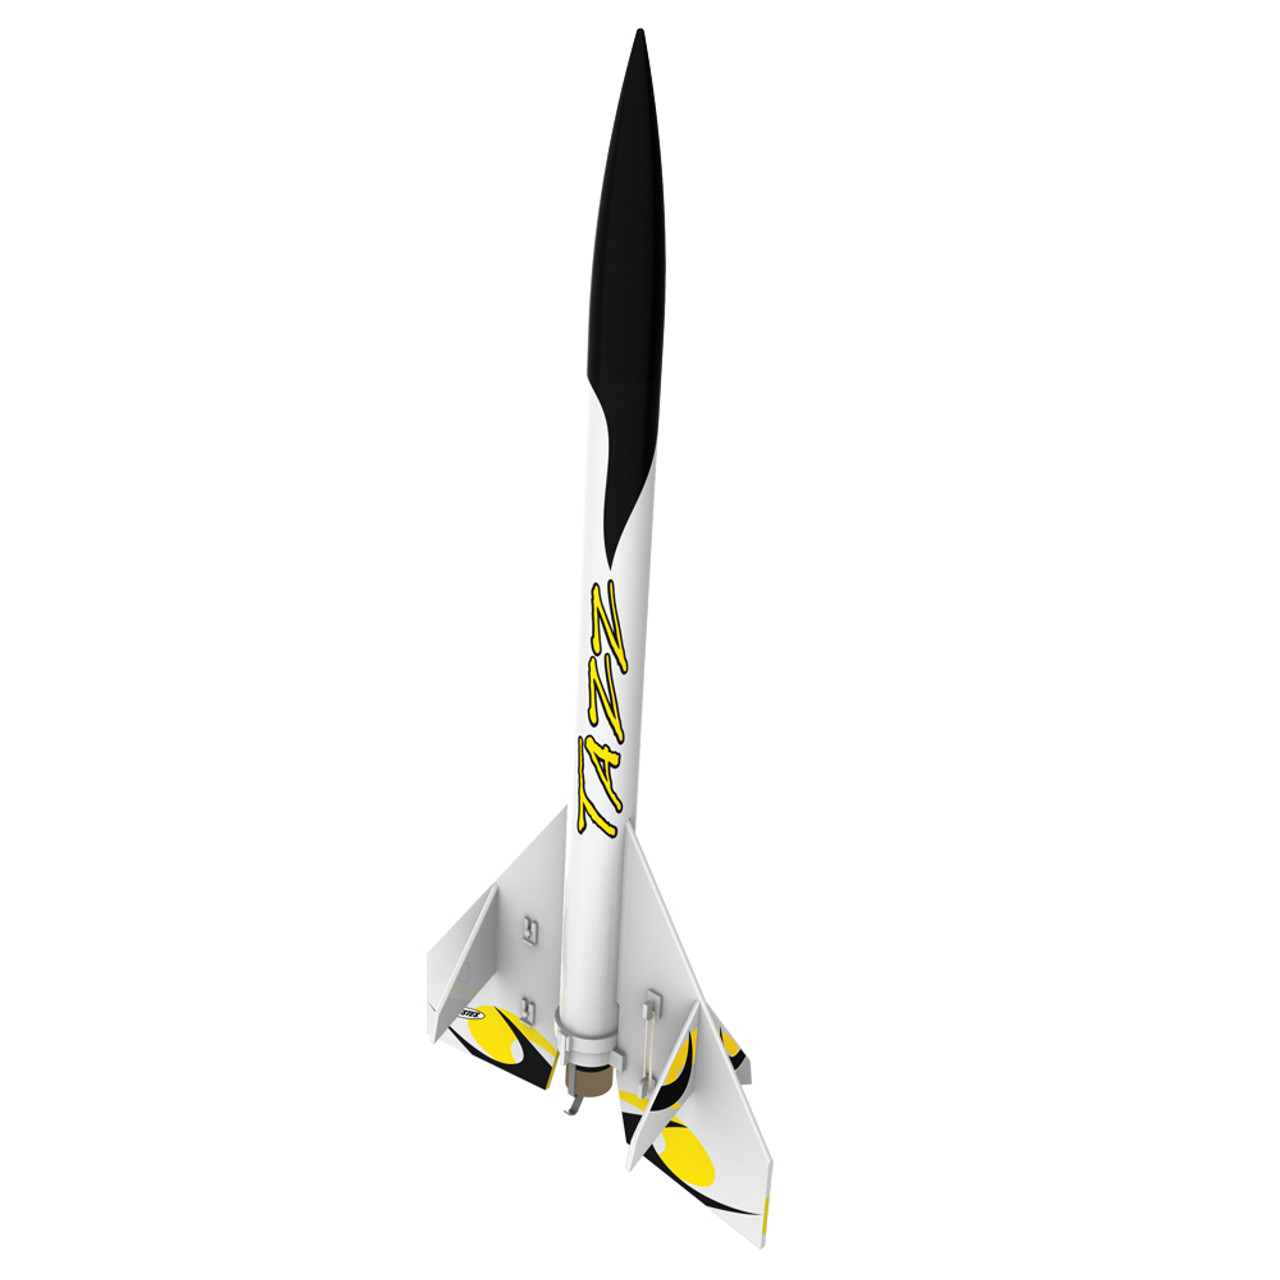 Estes Tazz Model Rocket Kit, Advanced